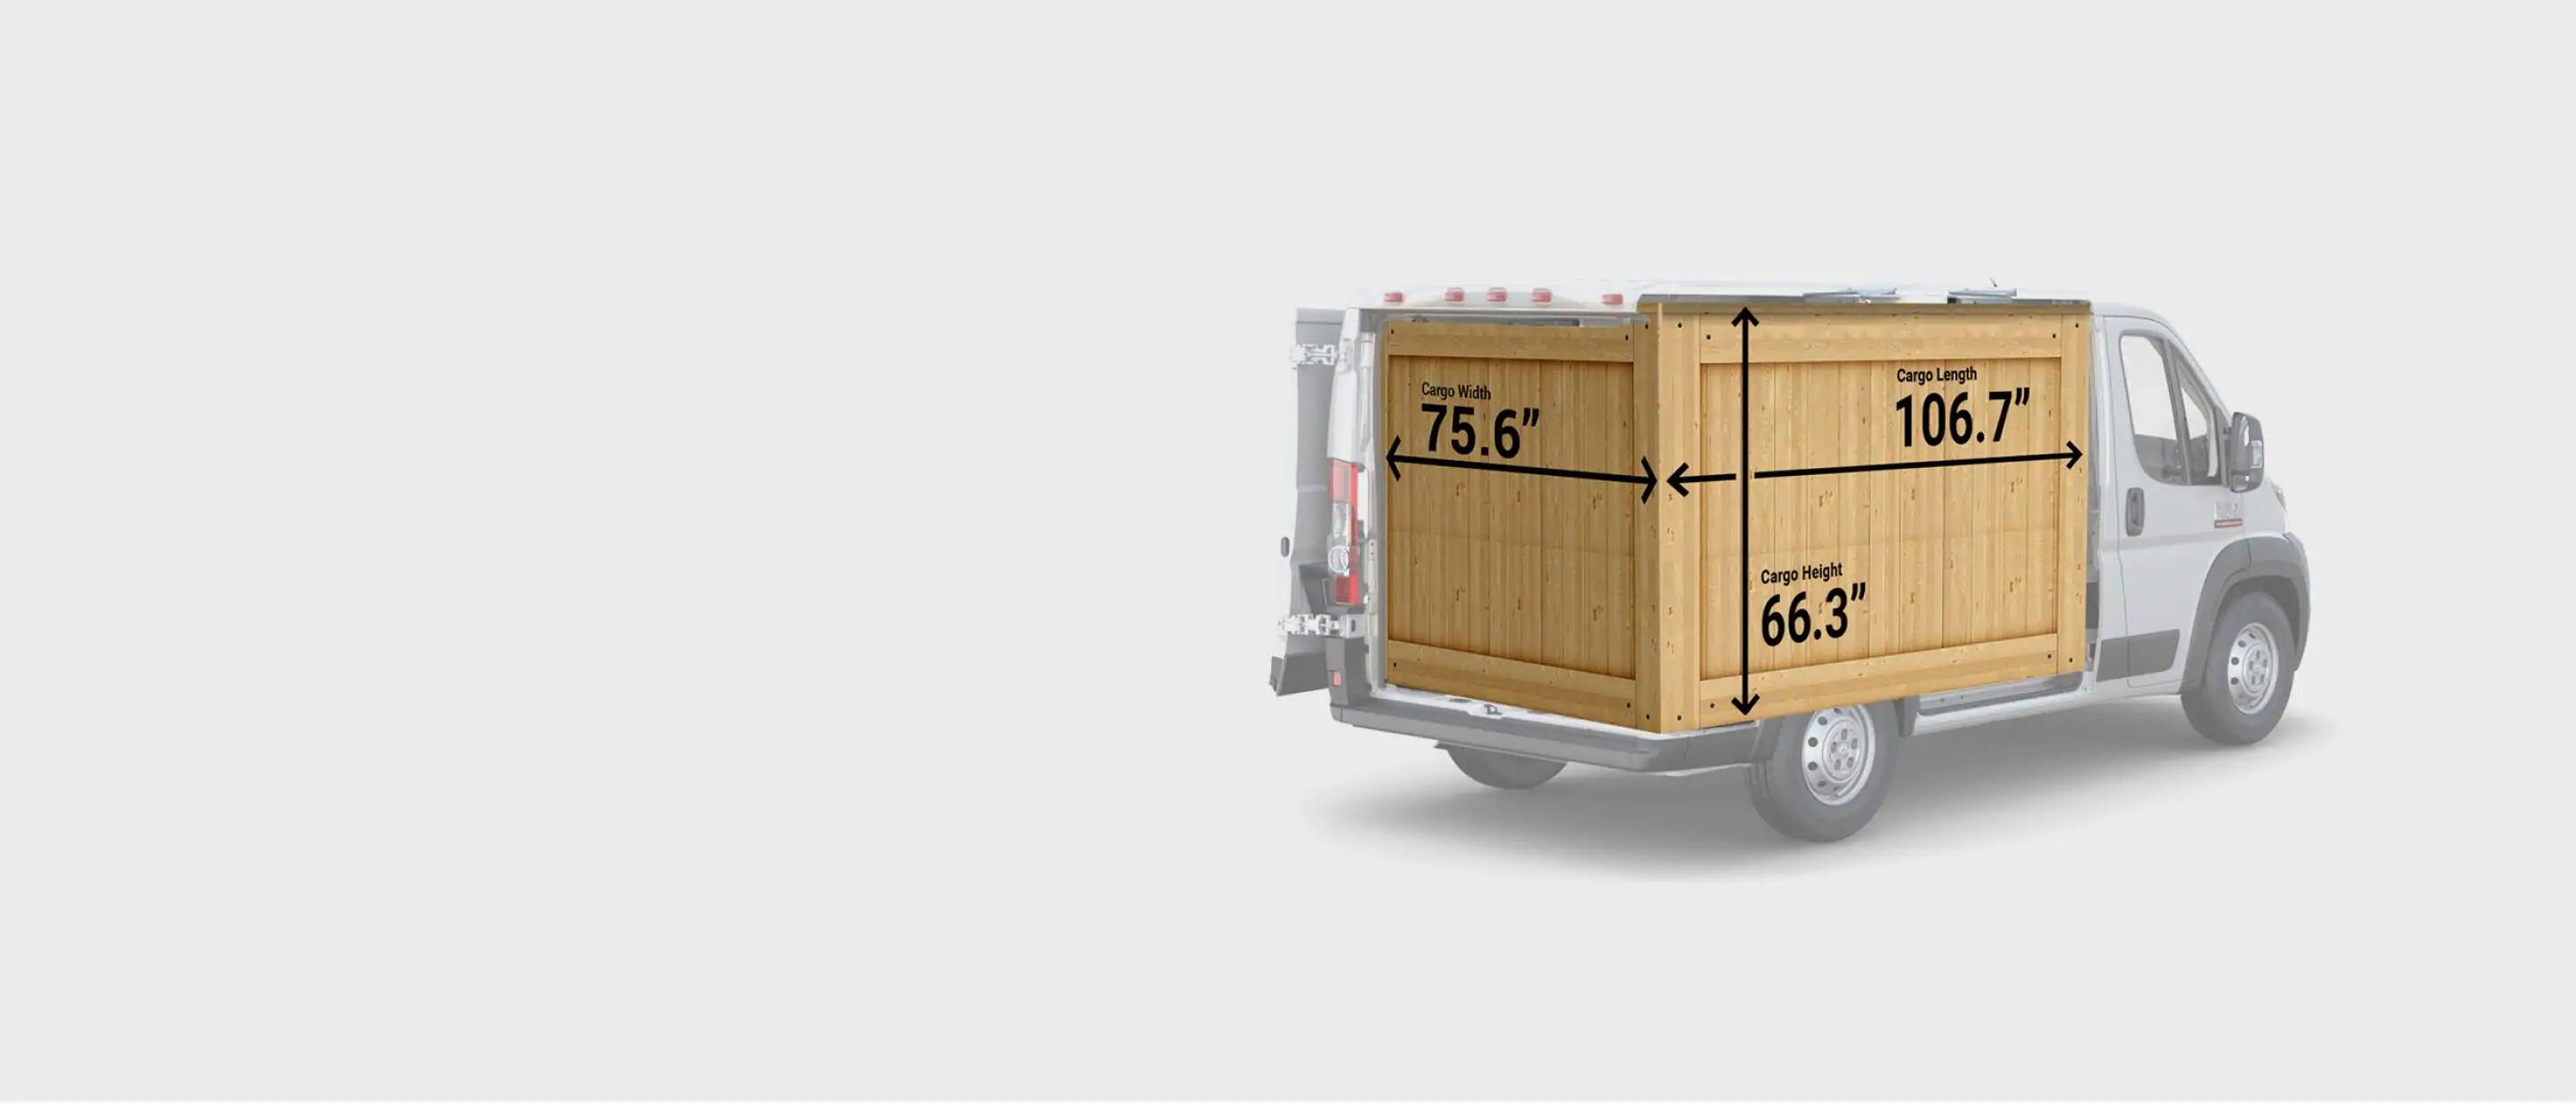 2019 Ram Promaster Cargo Van Features